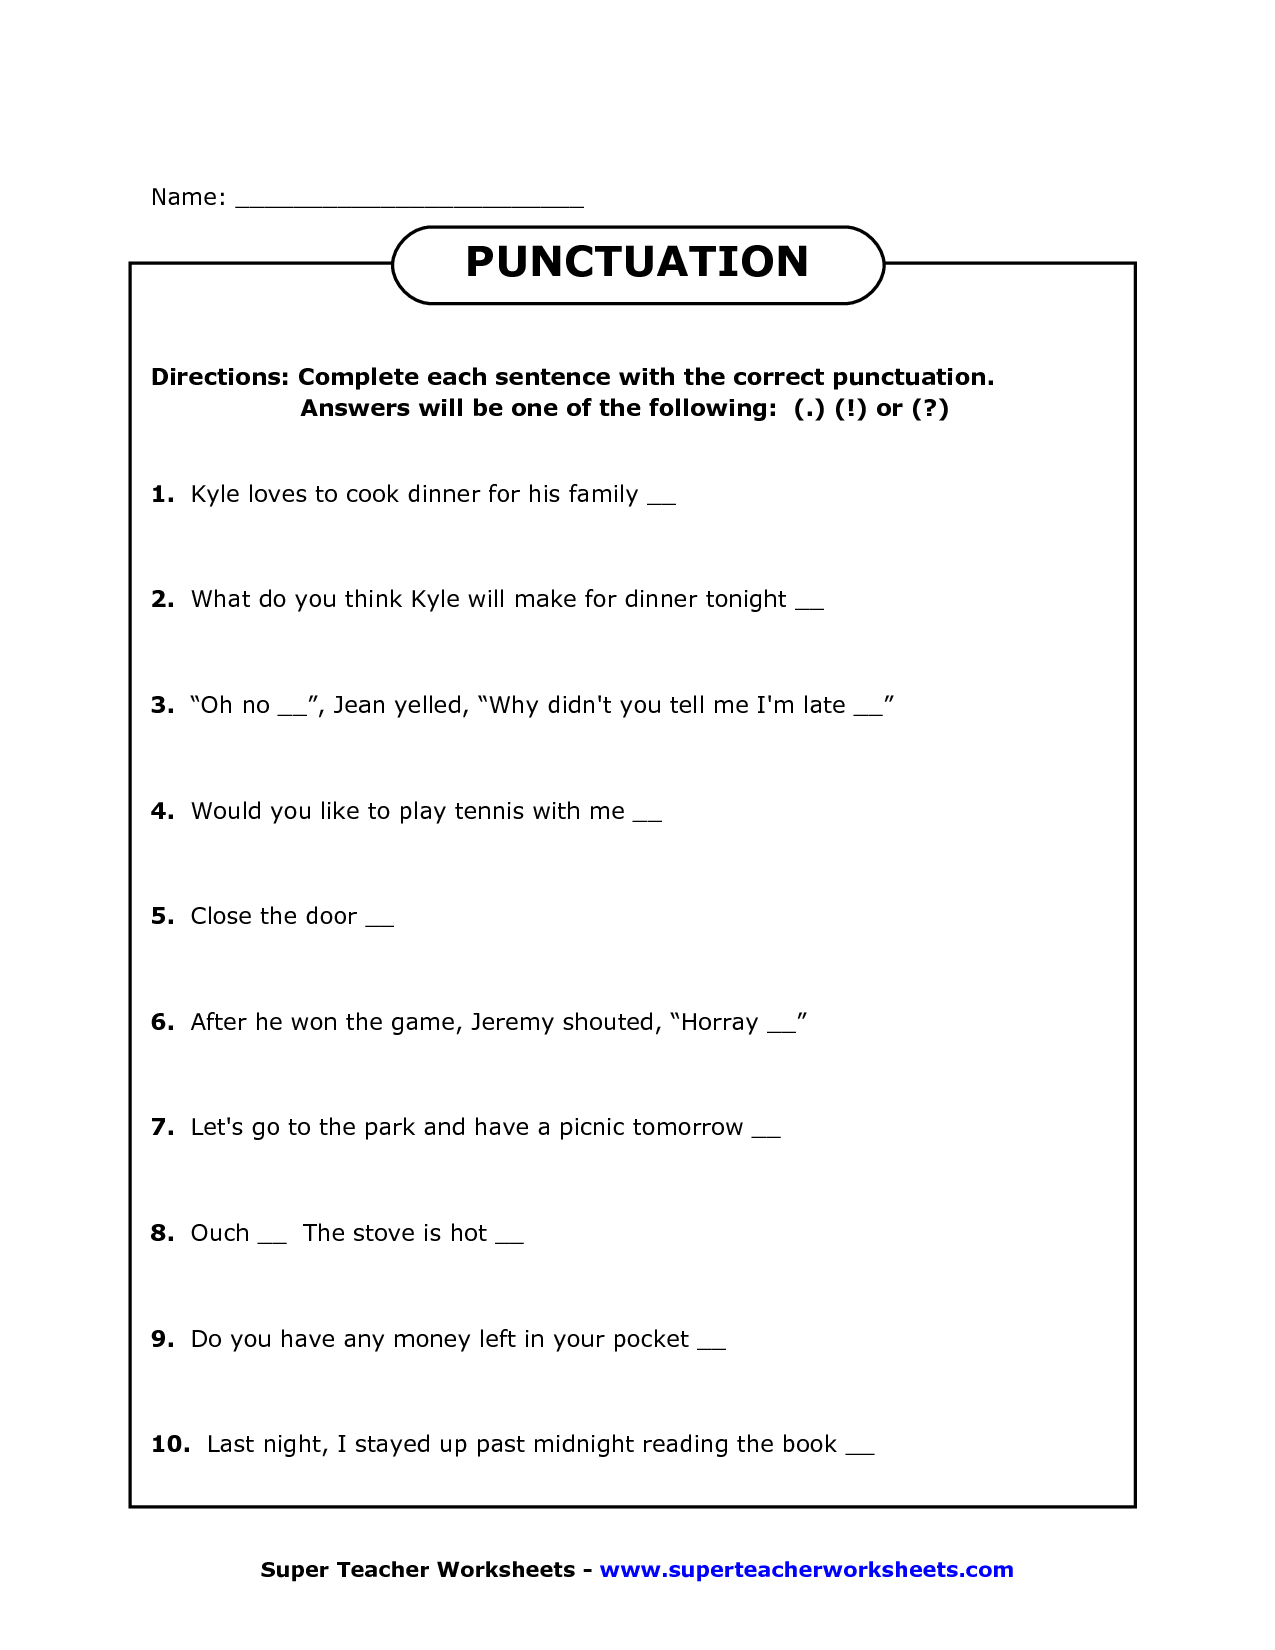 17 Best Images Of Punctuation Worksheets For Grade 1 English Grammar Worksheets Grade 1